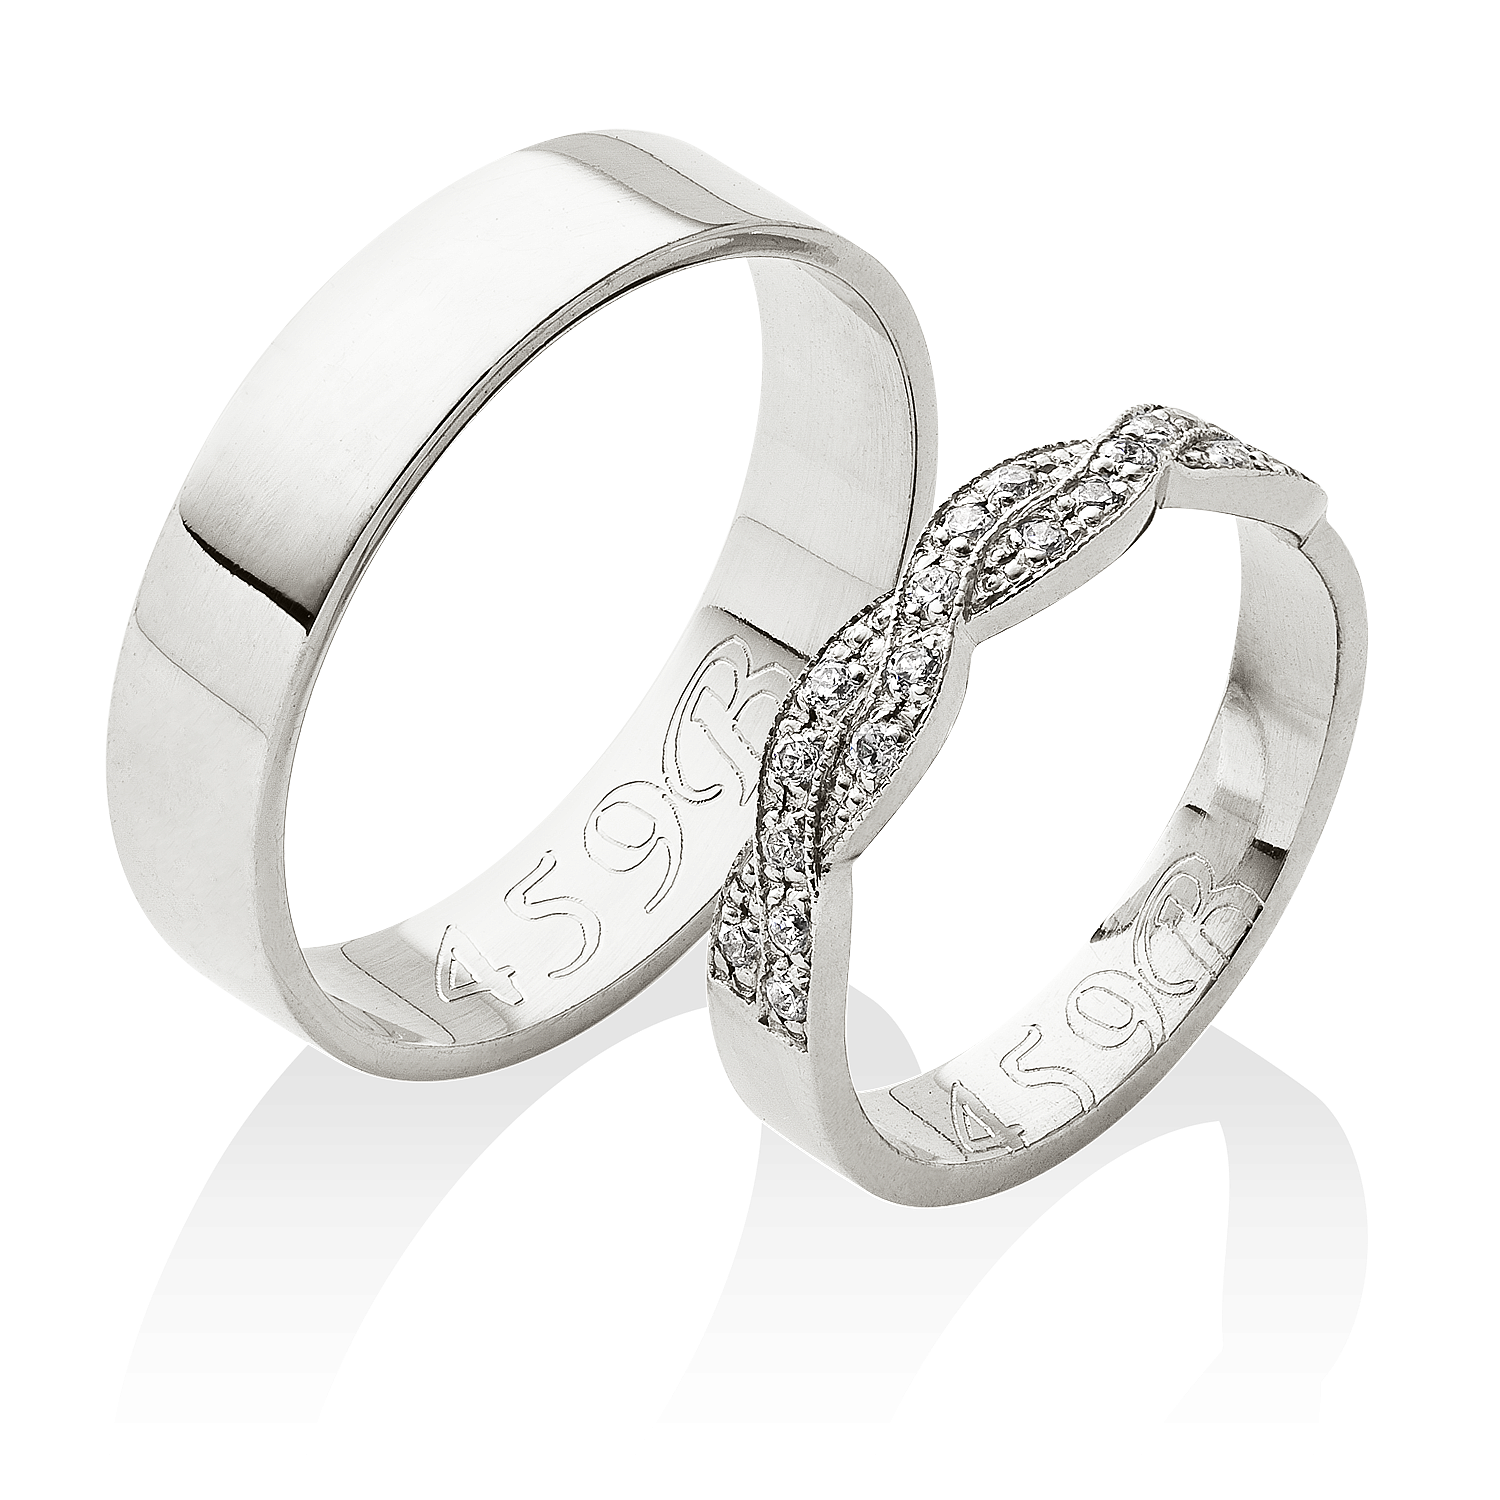 Skvostný pár snubních prstenů z platiny